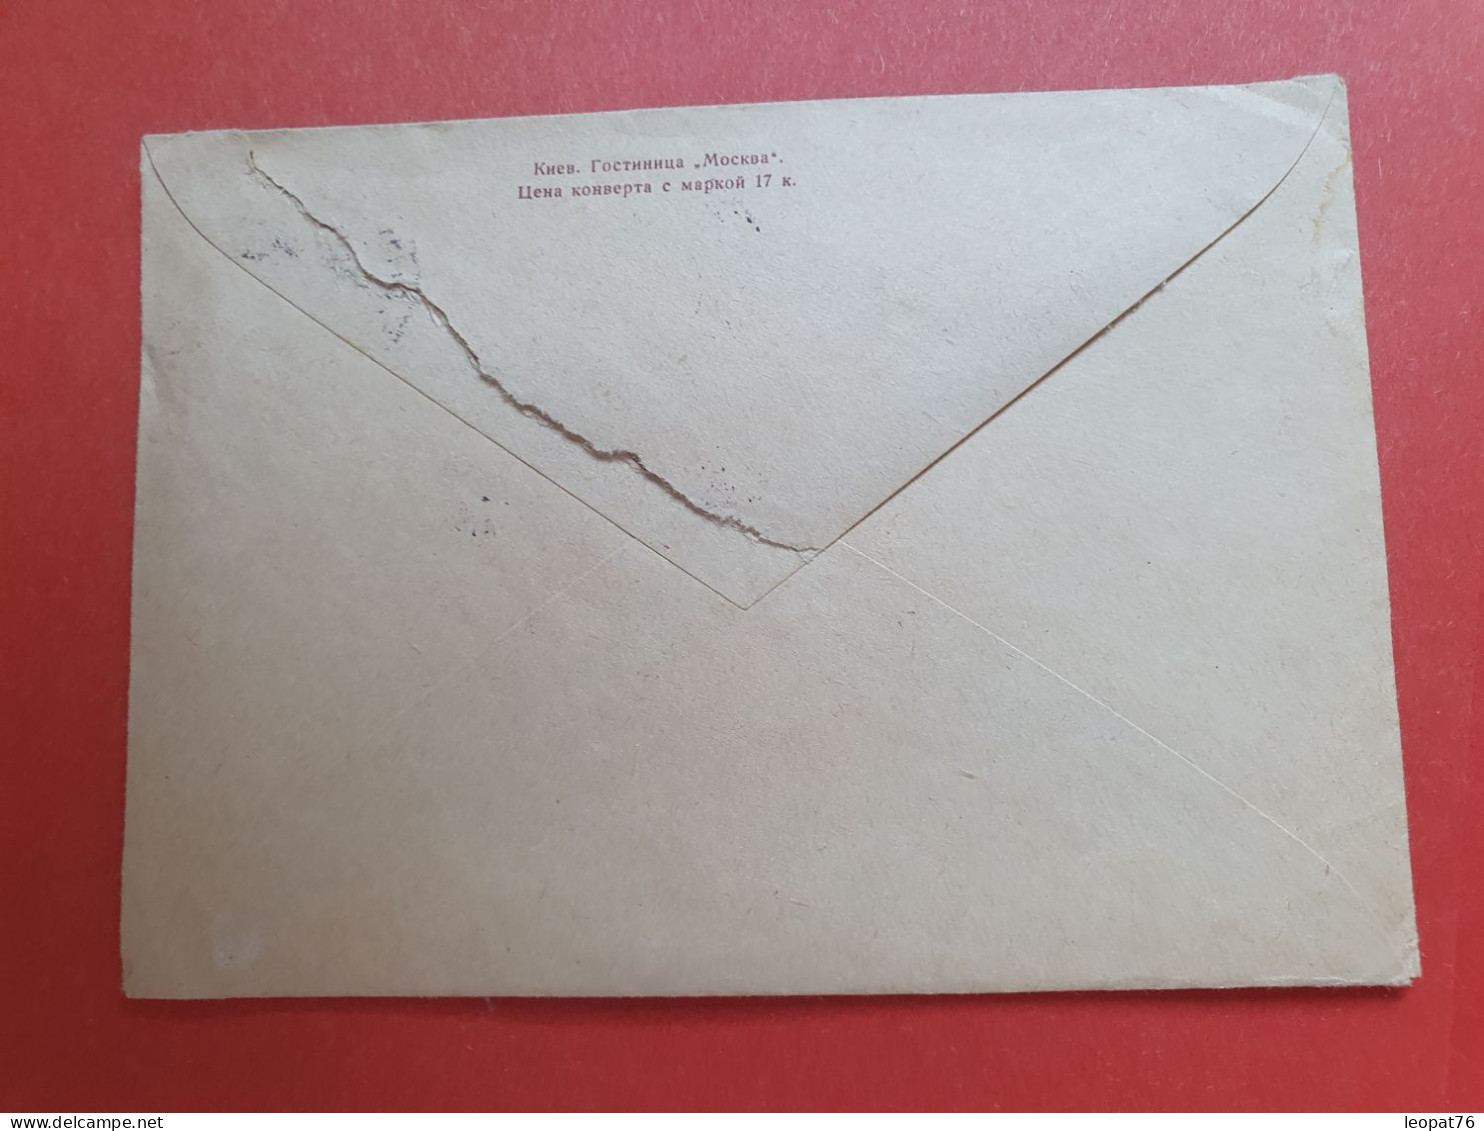 URSS - Entier Postal De Kharkov Pour Paris En 1966 - Correspondance à L'Intérieur écrit En Anglais - Réf 1032 - 1960-69